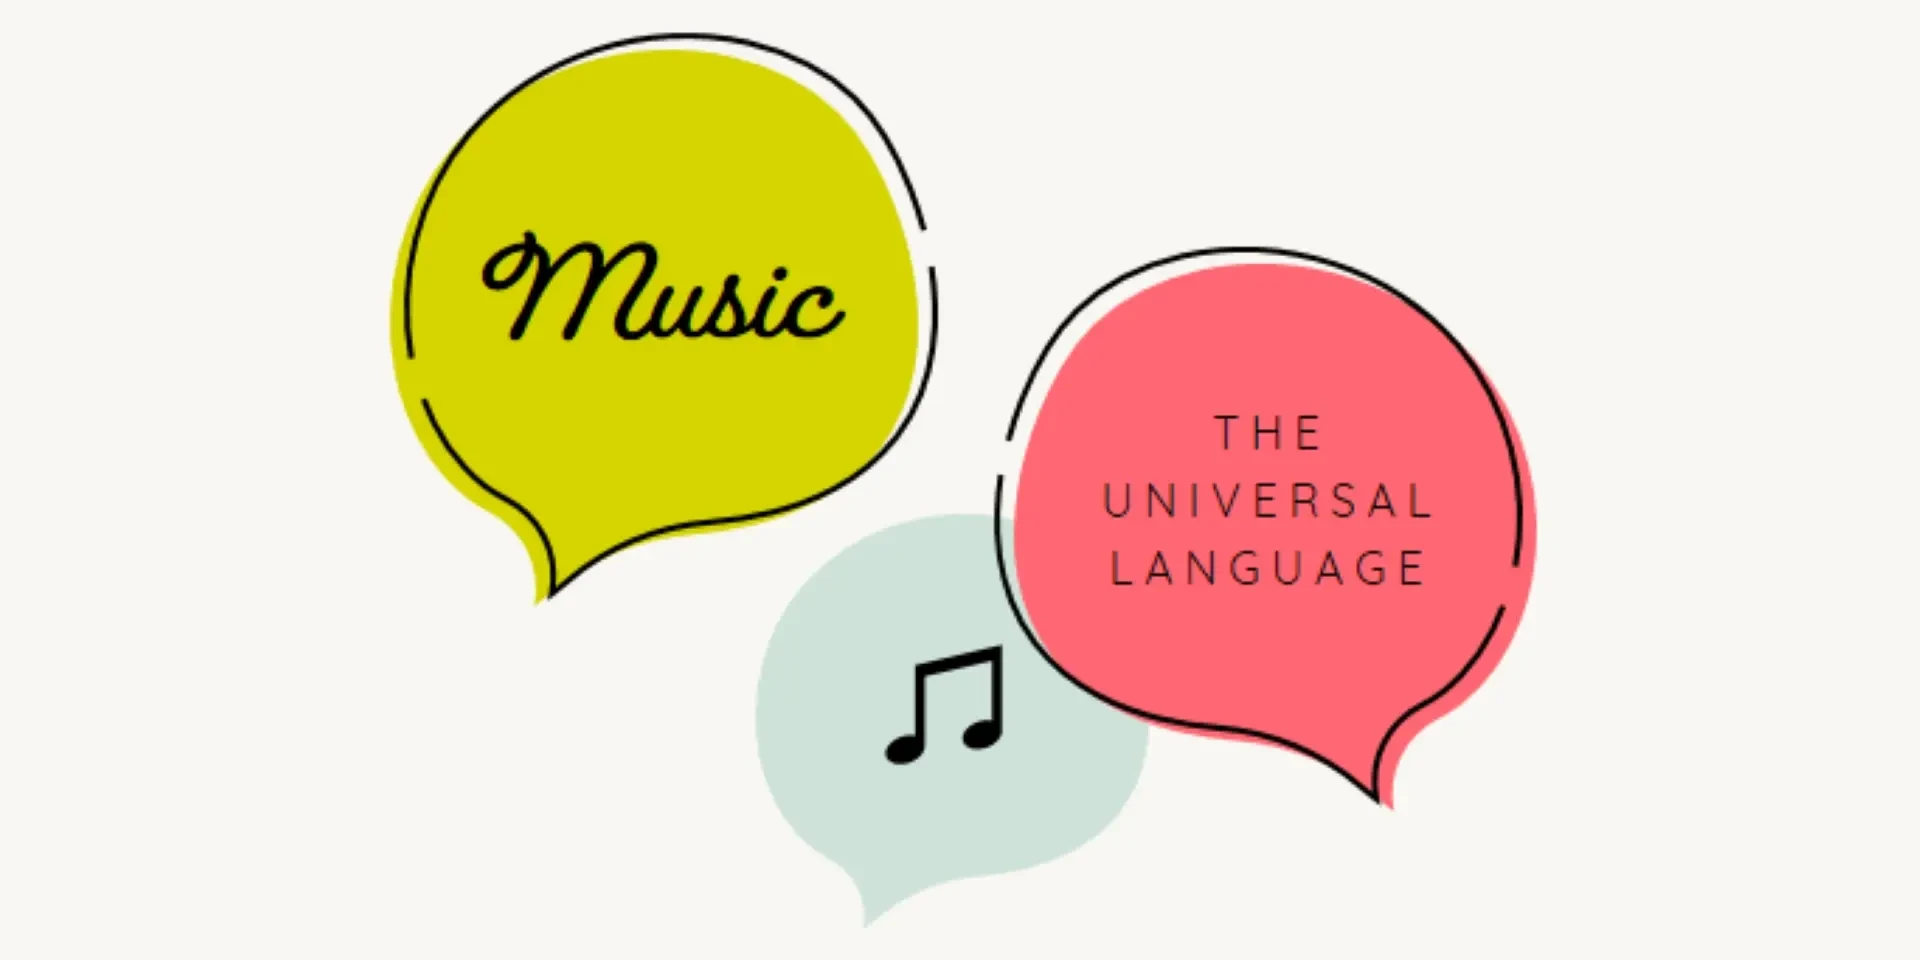 Musical language